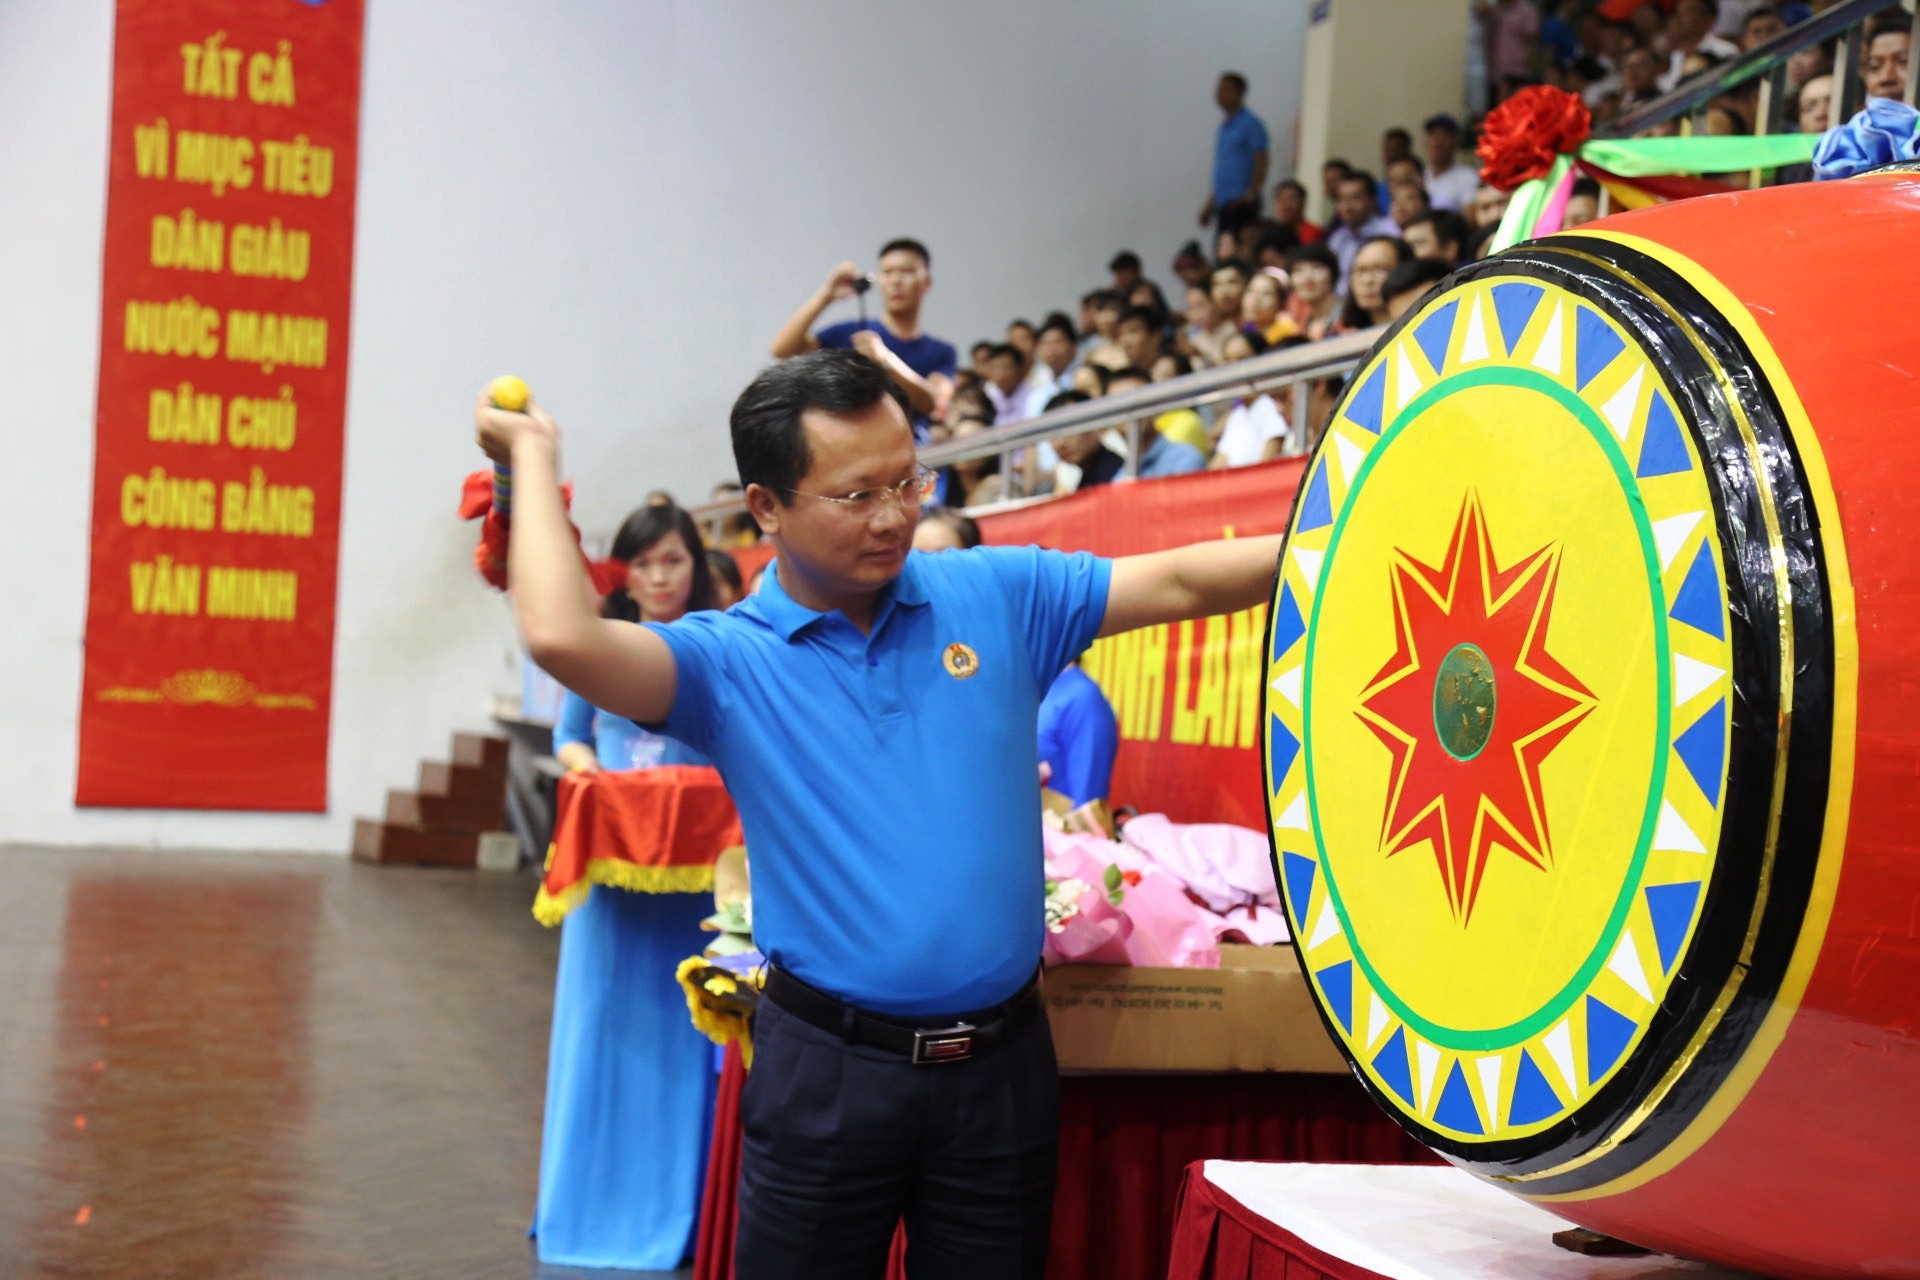 Đồng chí Cao Tường Huy, Phó chủ tịch UBND tỉnh Quảng Ninh gióng trống khai mạc ngày hội.